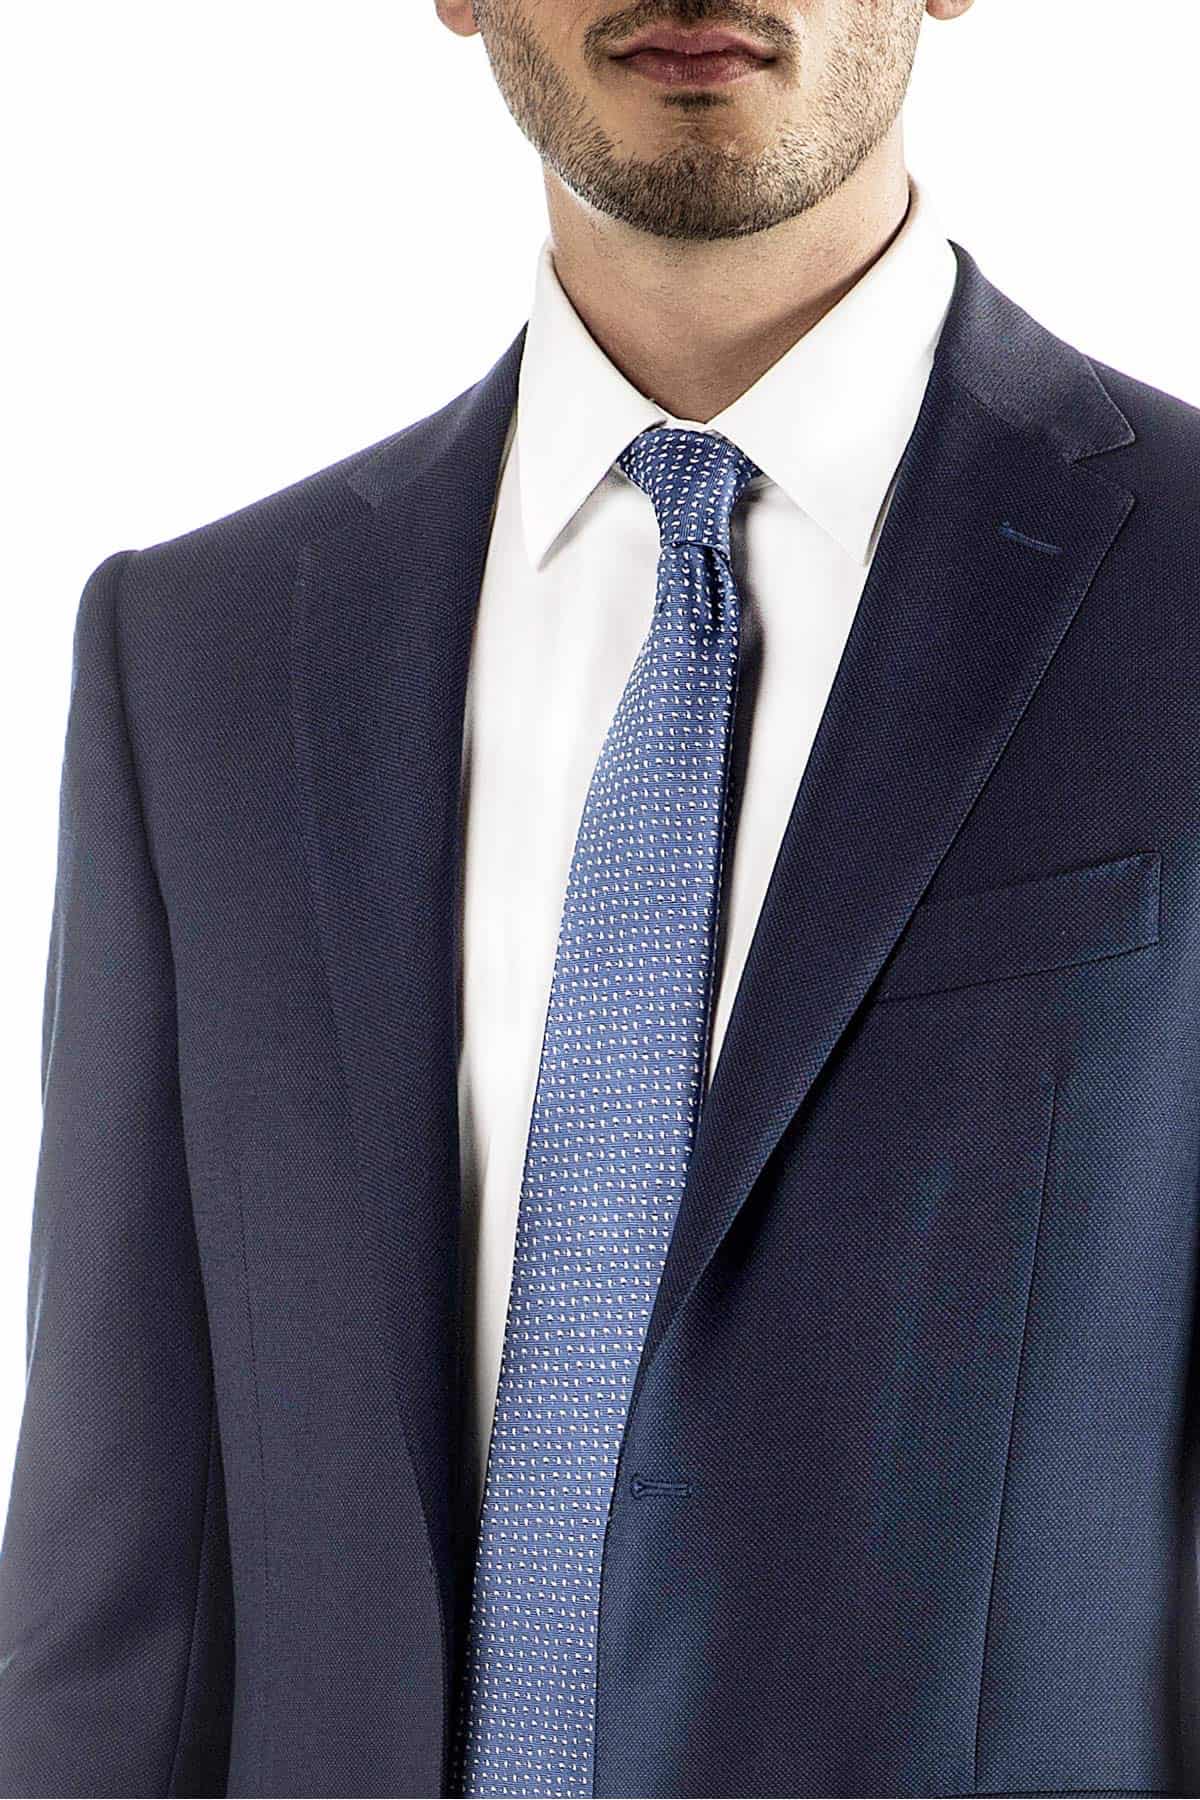 Pánský vlněný oblek s mikropotiskem v modré barvě